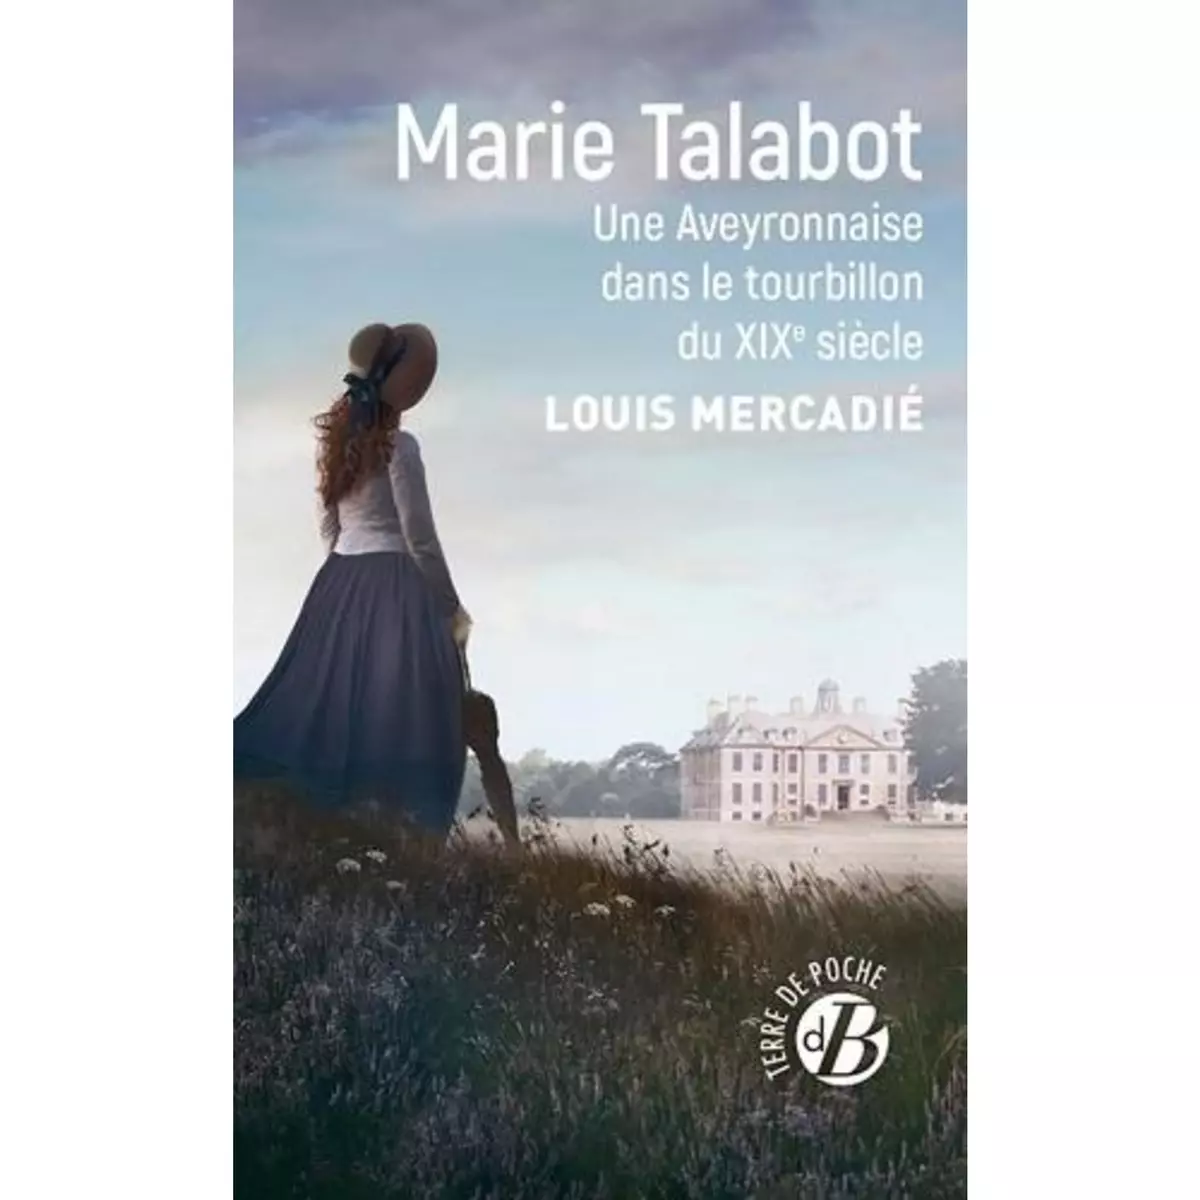  MARIE TALABOT. UNE AVEYRONNAISE DANS LE TOURBILLON DU XIXE SIECLE, Mercadié Louis